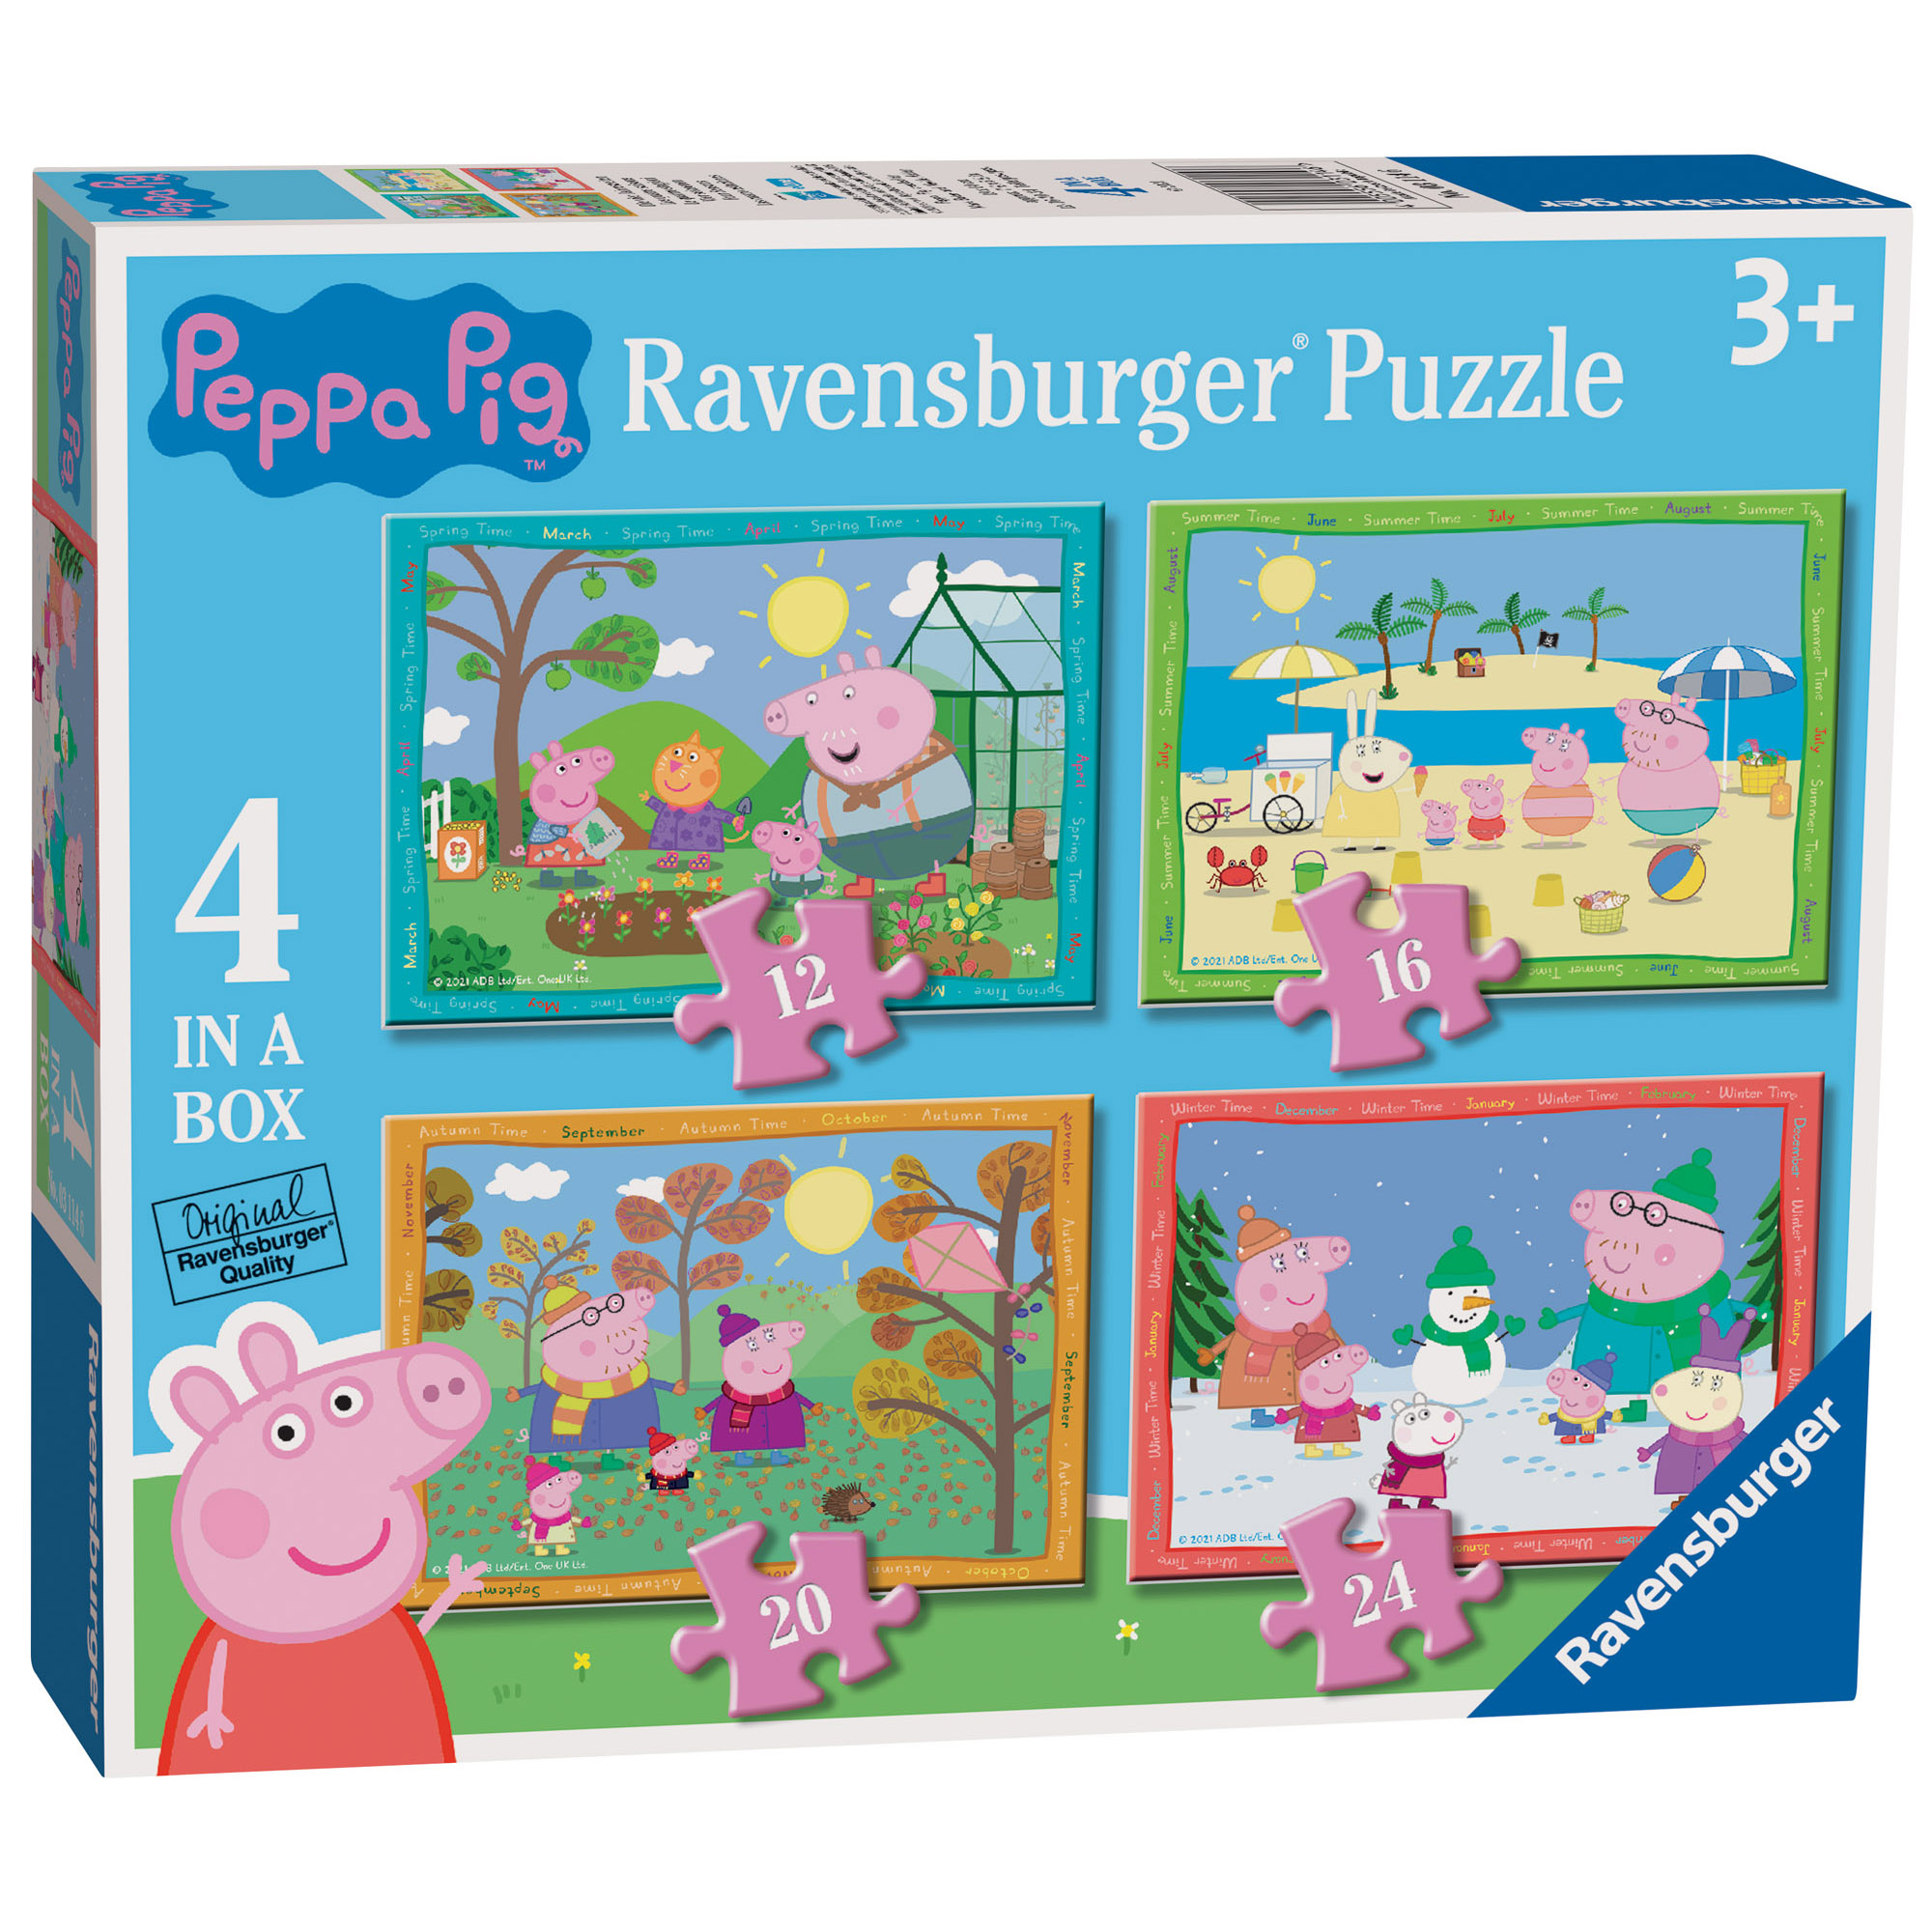 Ravensburger - puzzle peppa pig 4 stagioni, collezione 4 in a box, 4 puzzle da 12-16-20-24 pezzi, età raccomandata 3+ anni - RAVENSBURGER